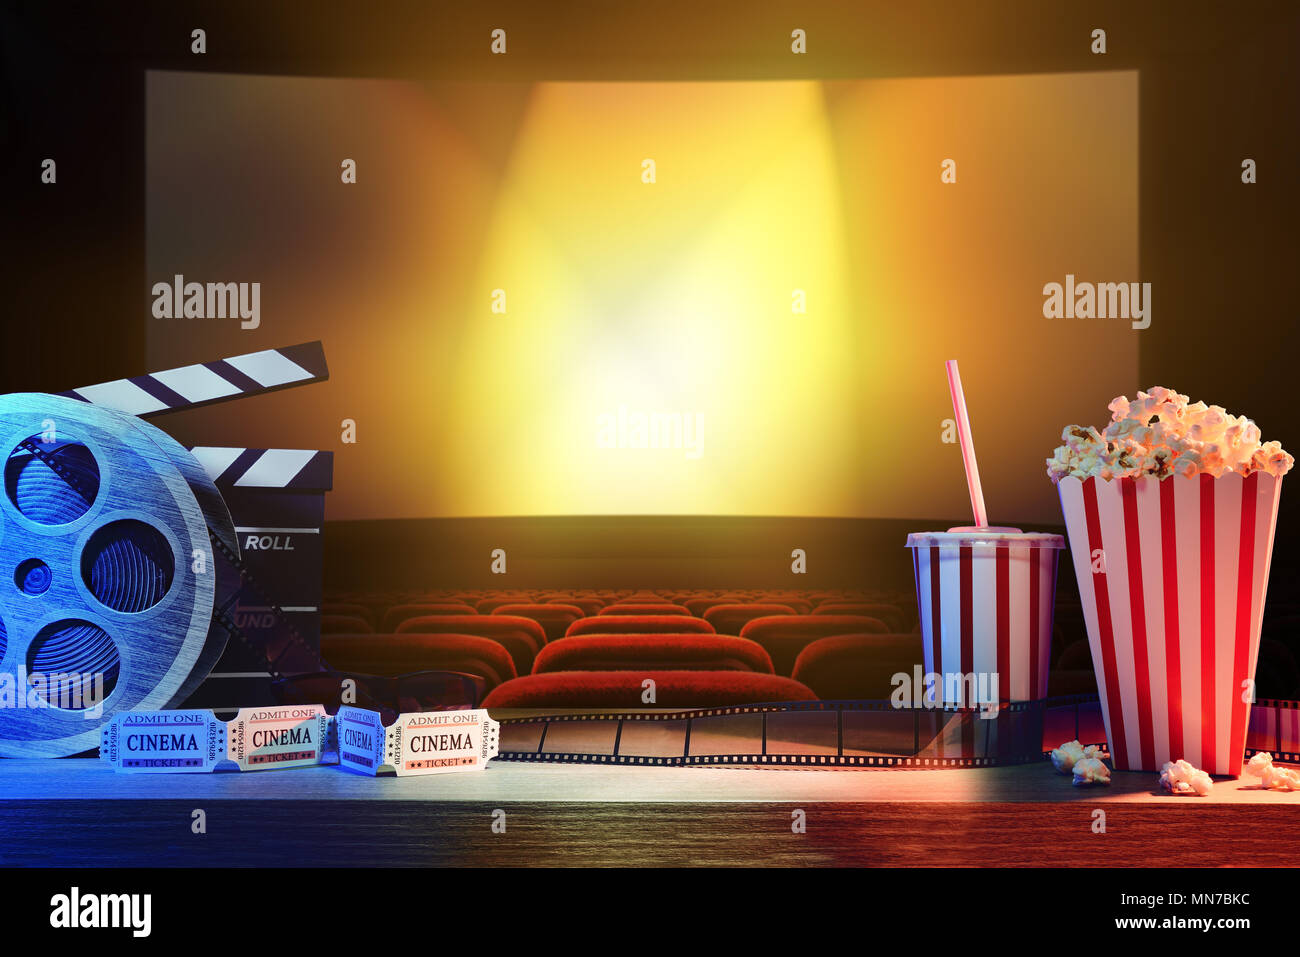 Geräte und Elemente des Kinos auf Holztisch und Hintergrund Kino. Konzept der Filme. Horizontale Komposition. Vorderansicht. Stockfoto